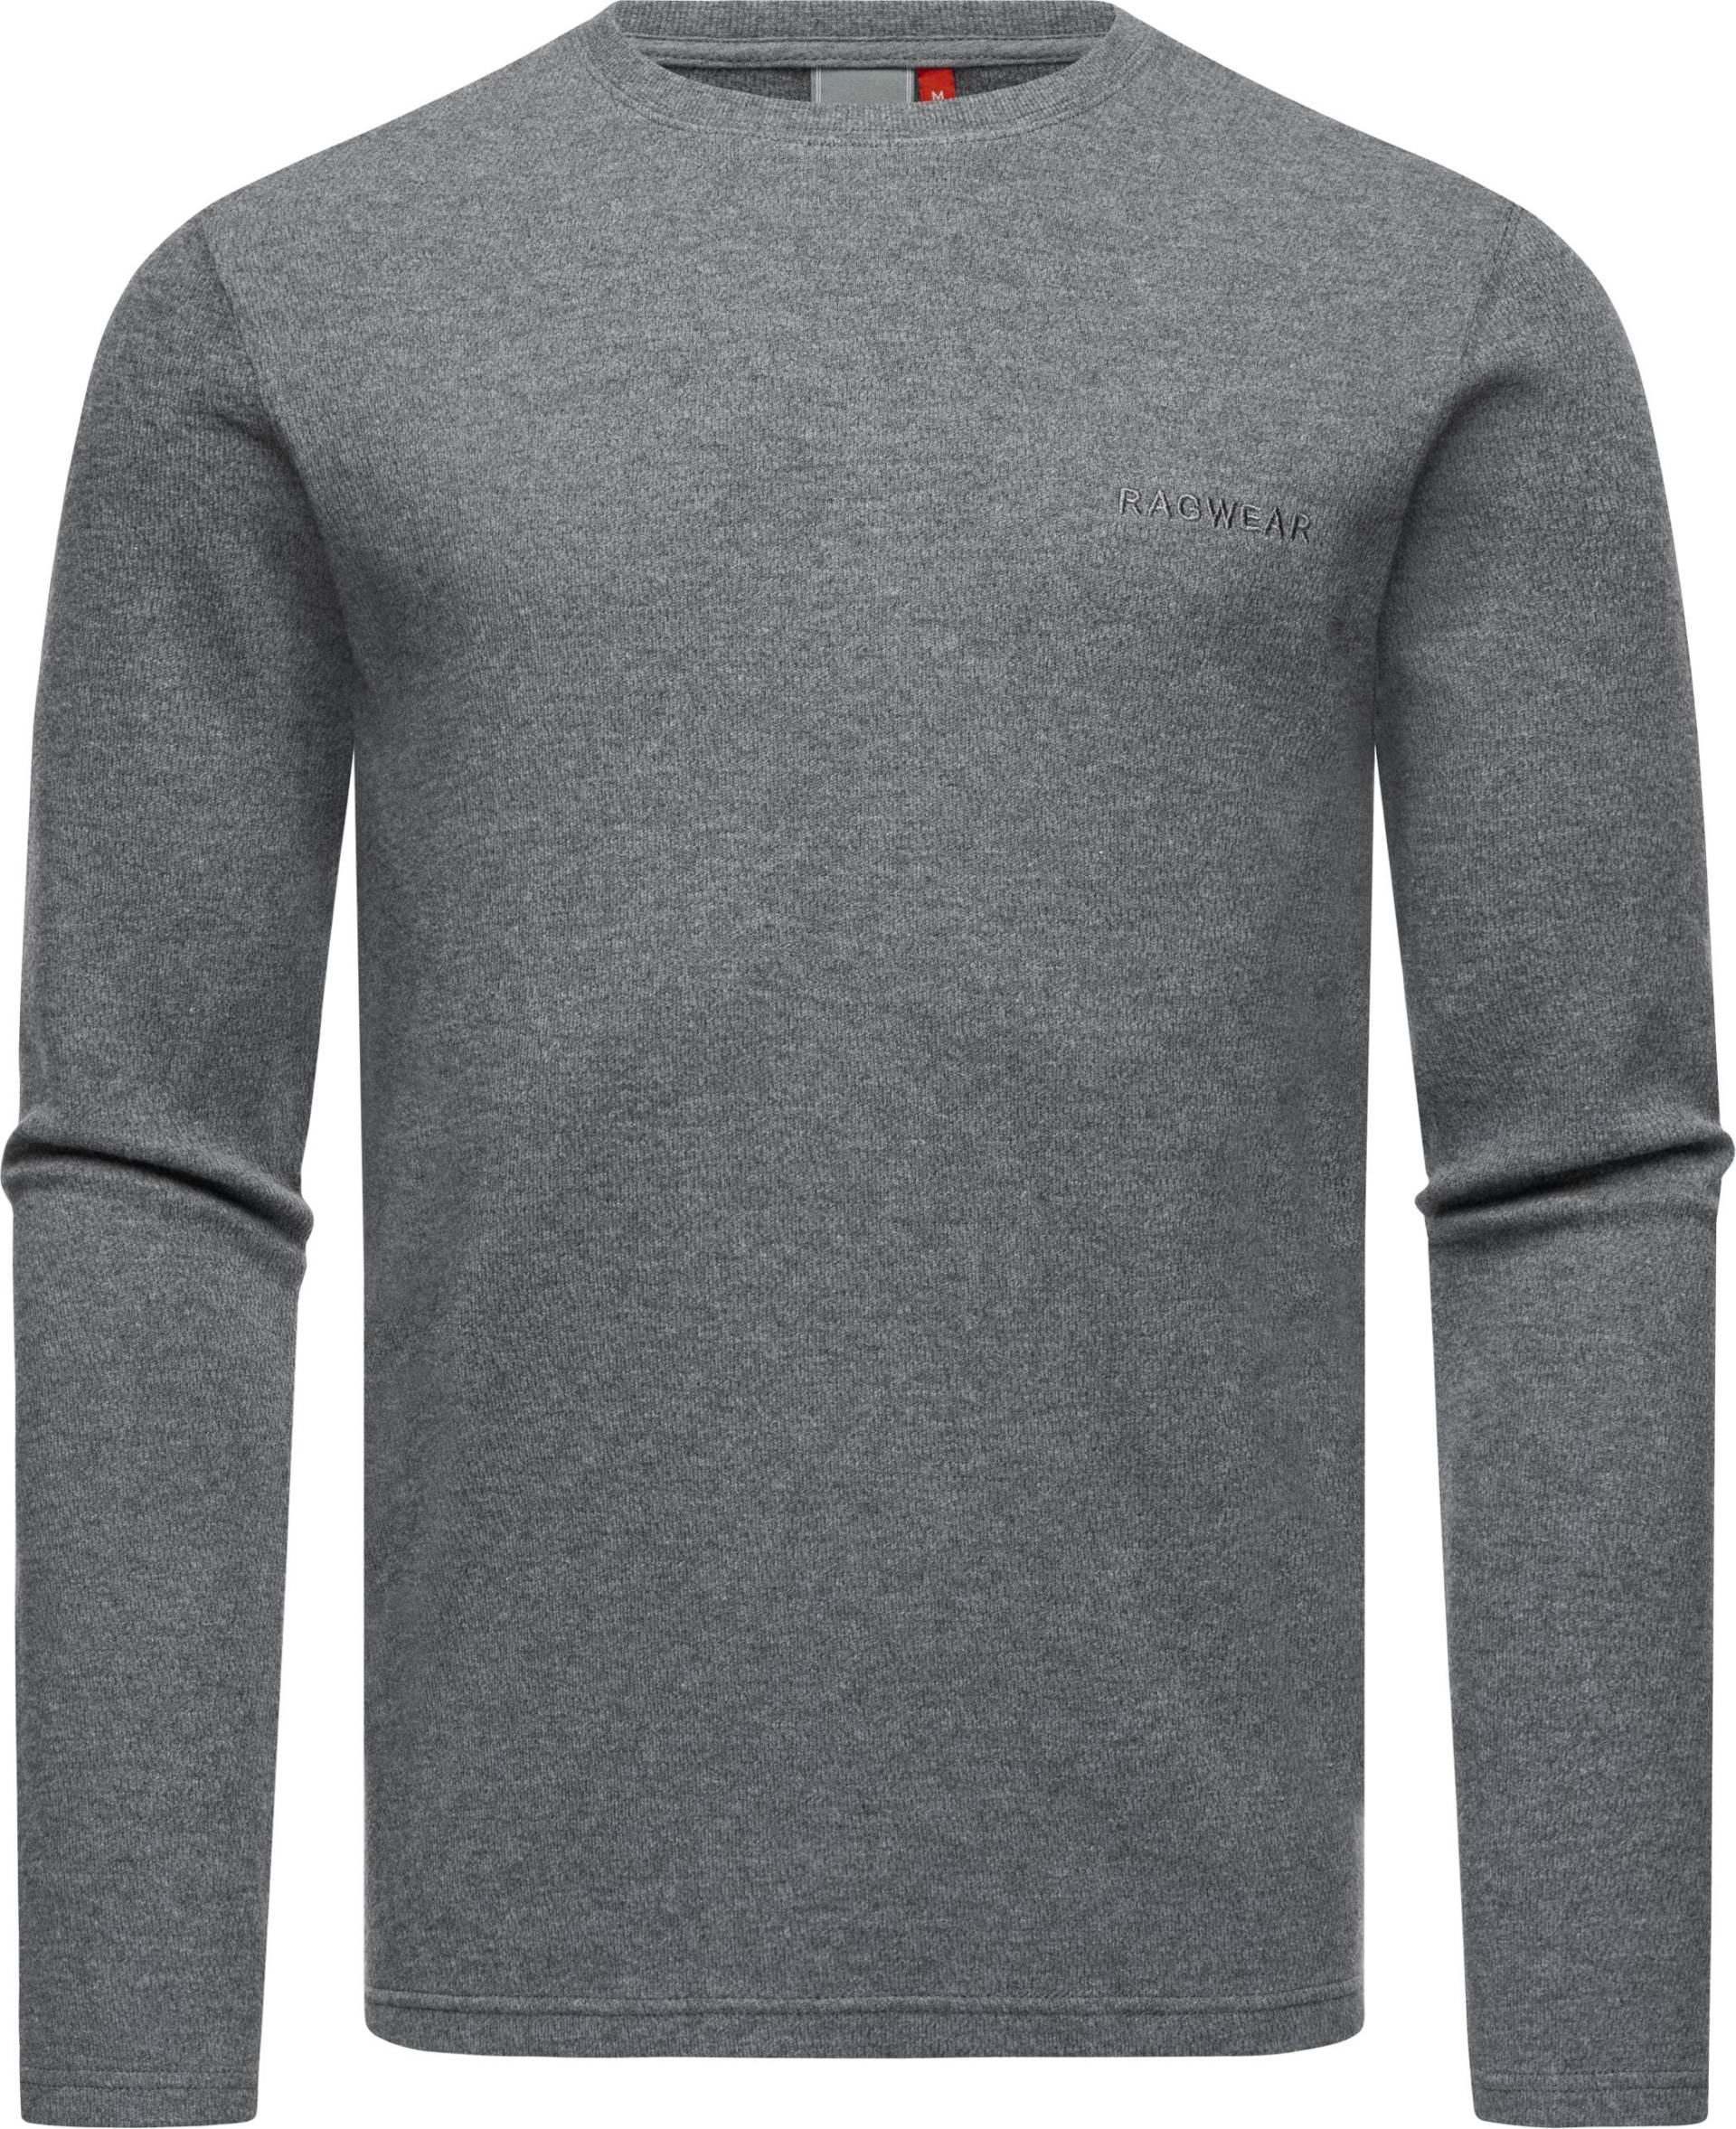 Ragwear Sweatshirt "Cyen", Stylischer leichter Herren Pullover von Ragwear